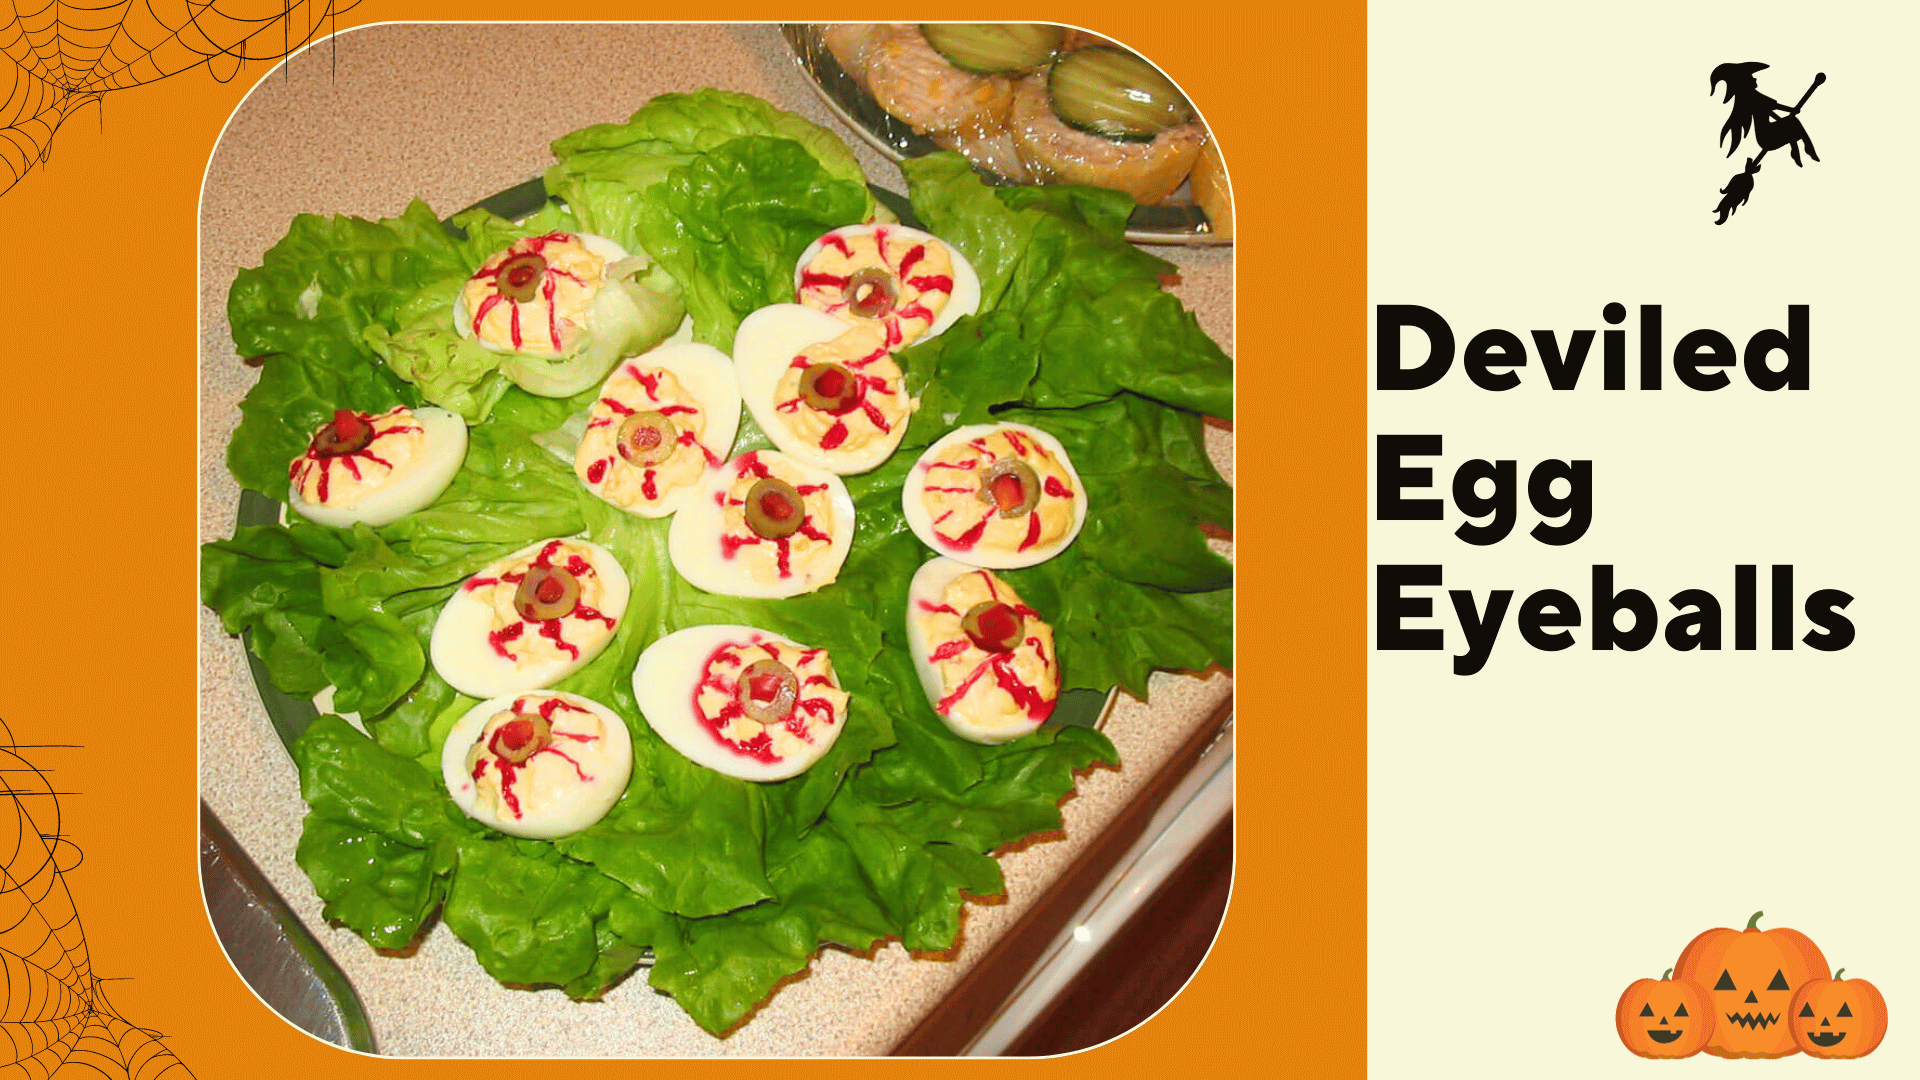 Deviled Egg Eyeballs